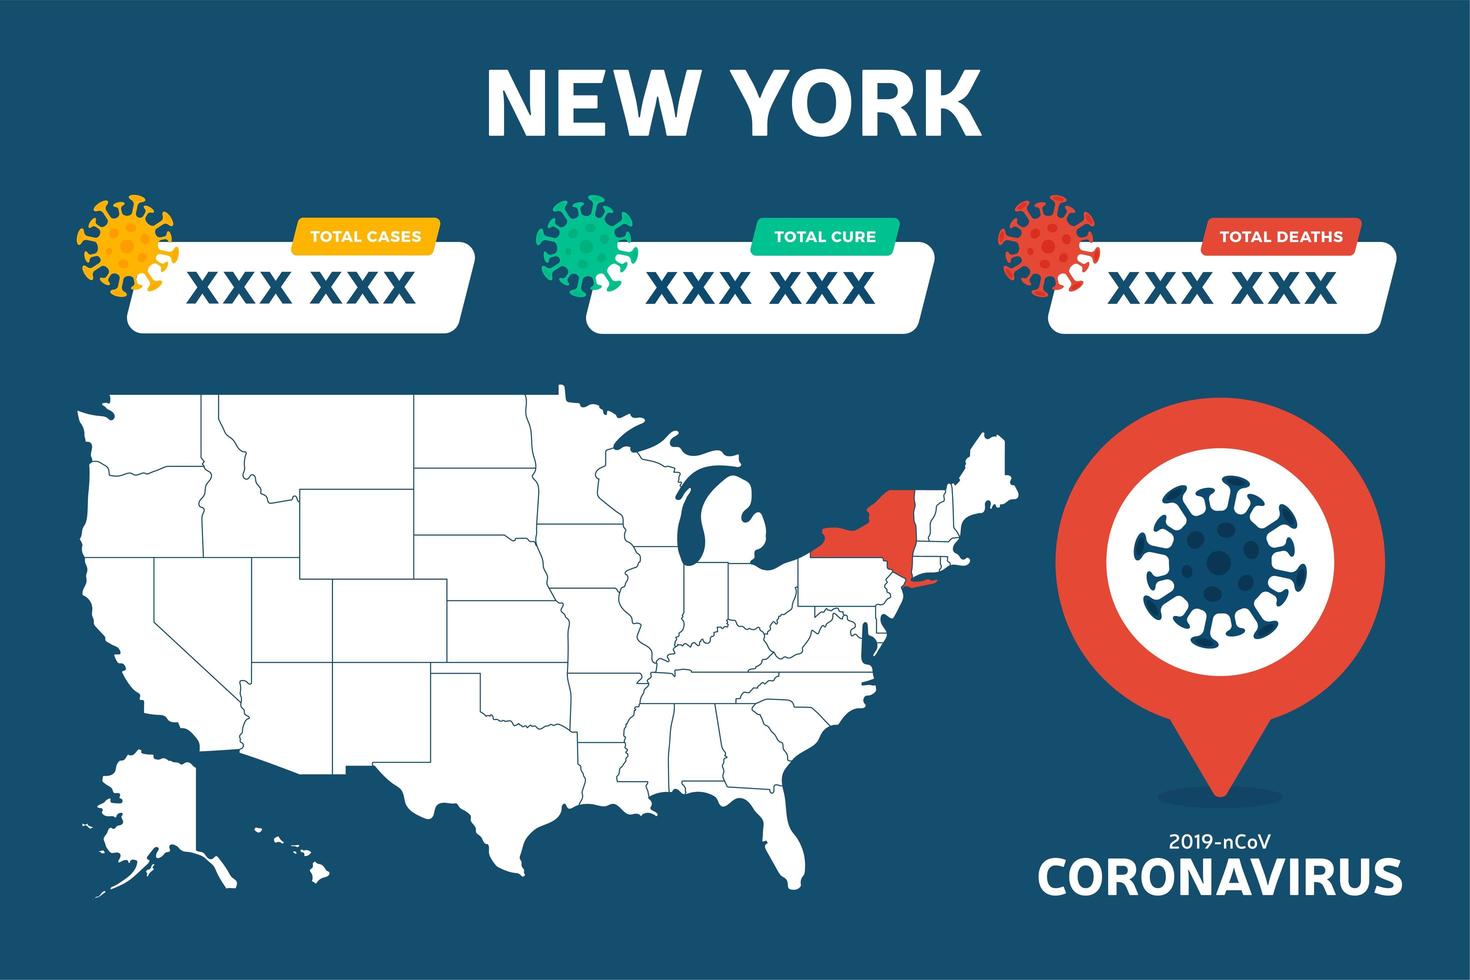 covid-19 new york state usa karta bekräftade fall, botemedel, dödsrapport. coronavirus sjukdom 2019 situation uppdatering över hela världen. amerikanska kartor och nyhetsrubrik visar situation och statistikbakgrund vektor